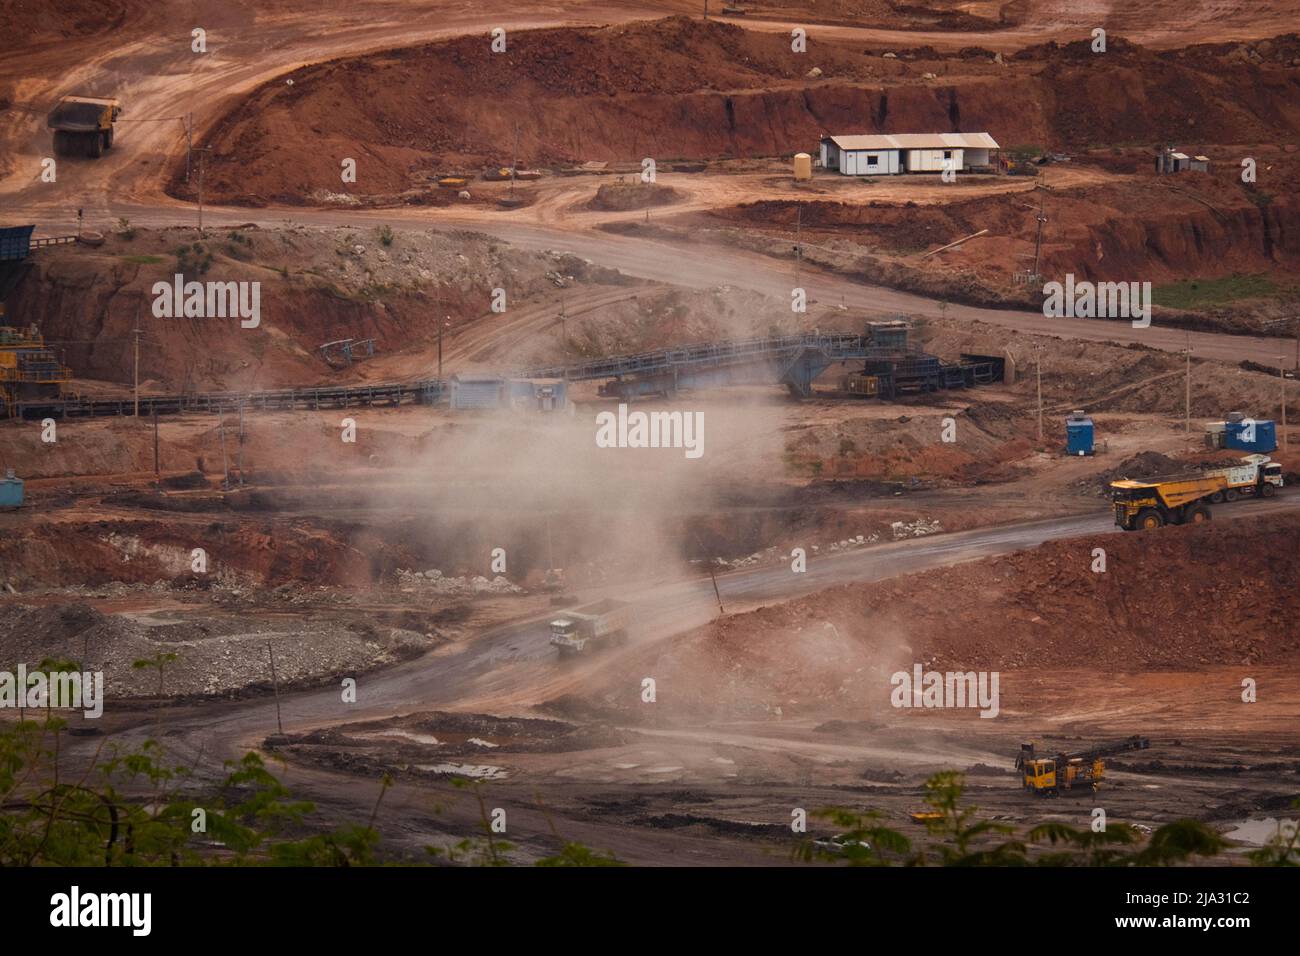 Vista del trabajo de camiones y excavadoras en pozos abiertos en minas de carbón de lignito. Industria de extracción de carbón lignito. El famoso centro de aprendizaje al aire libre de Mae MOH Foto de stock